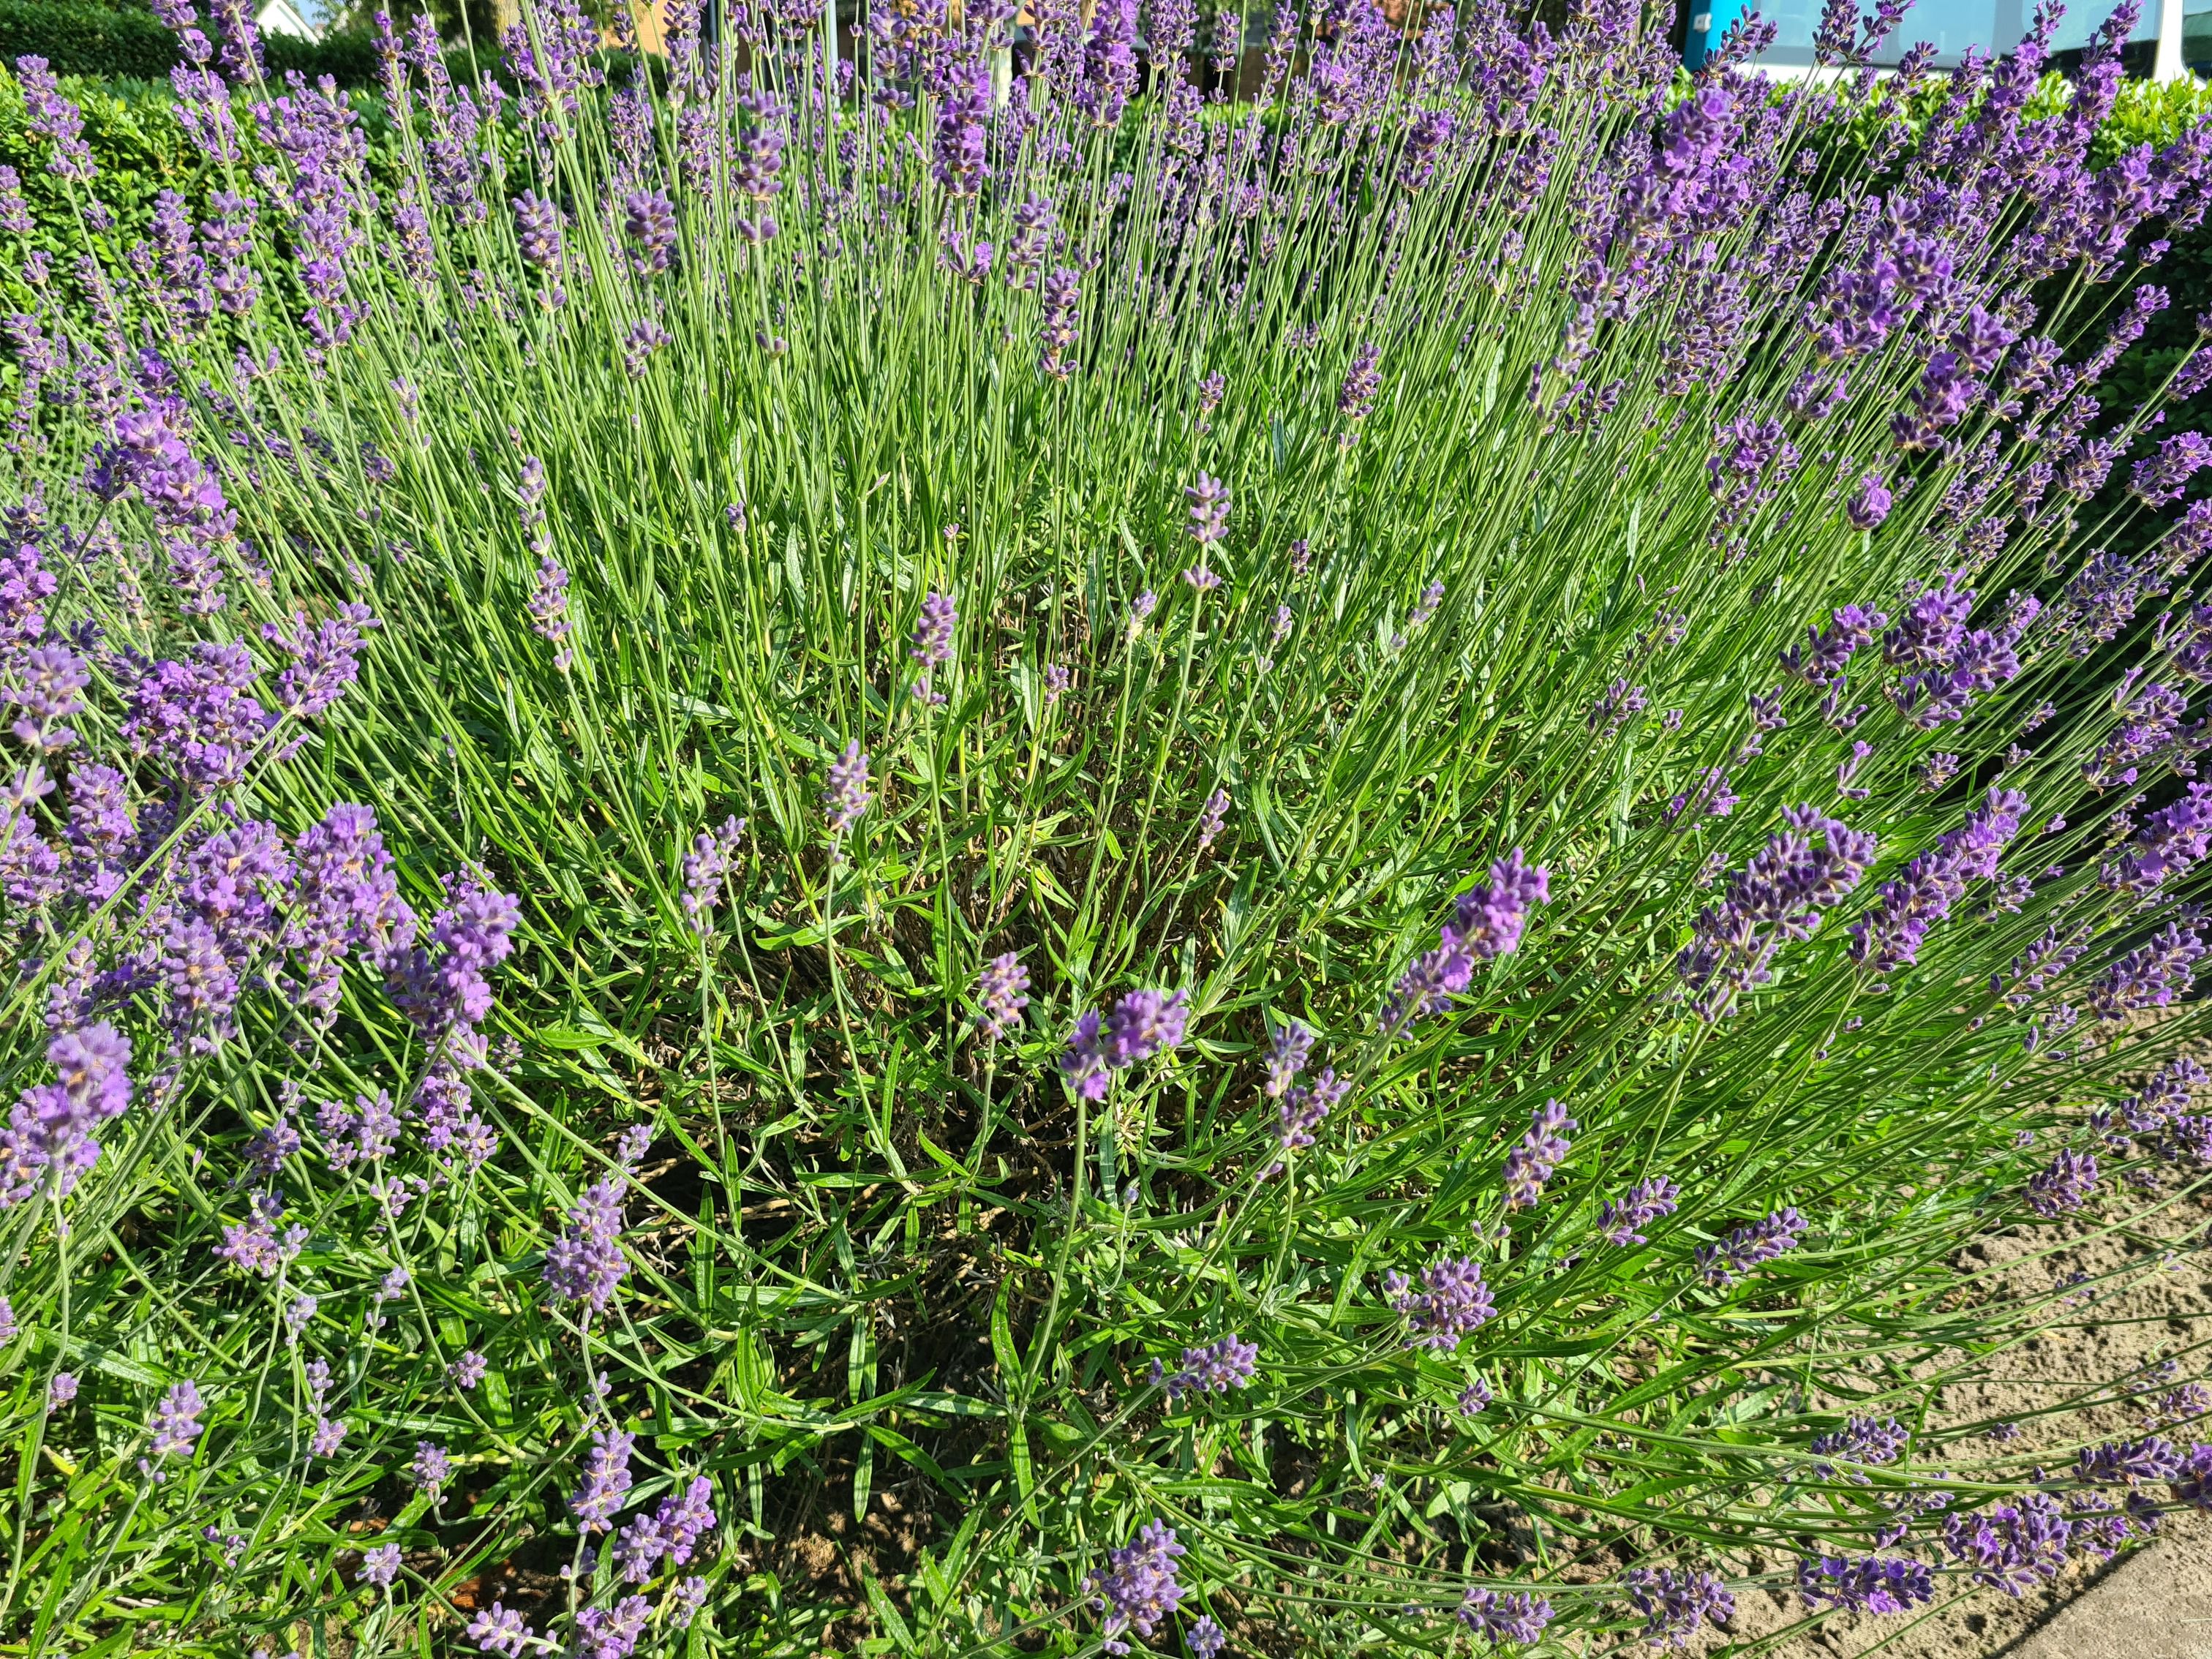 revolutie hartstochtelijk strottenhoofd Gewone lavendel Paars Lavandula Angustifolia 'Munstead' plant